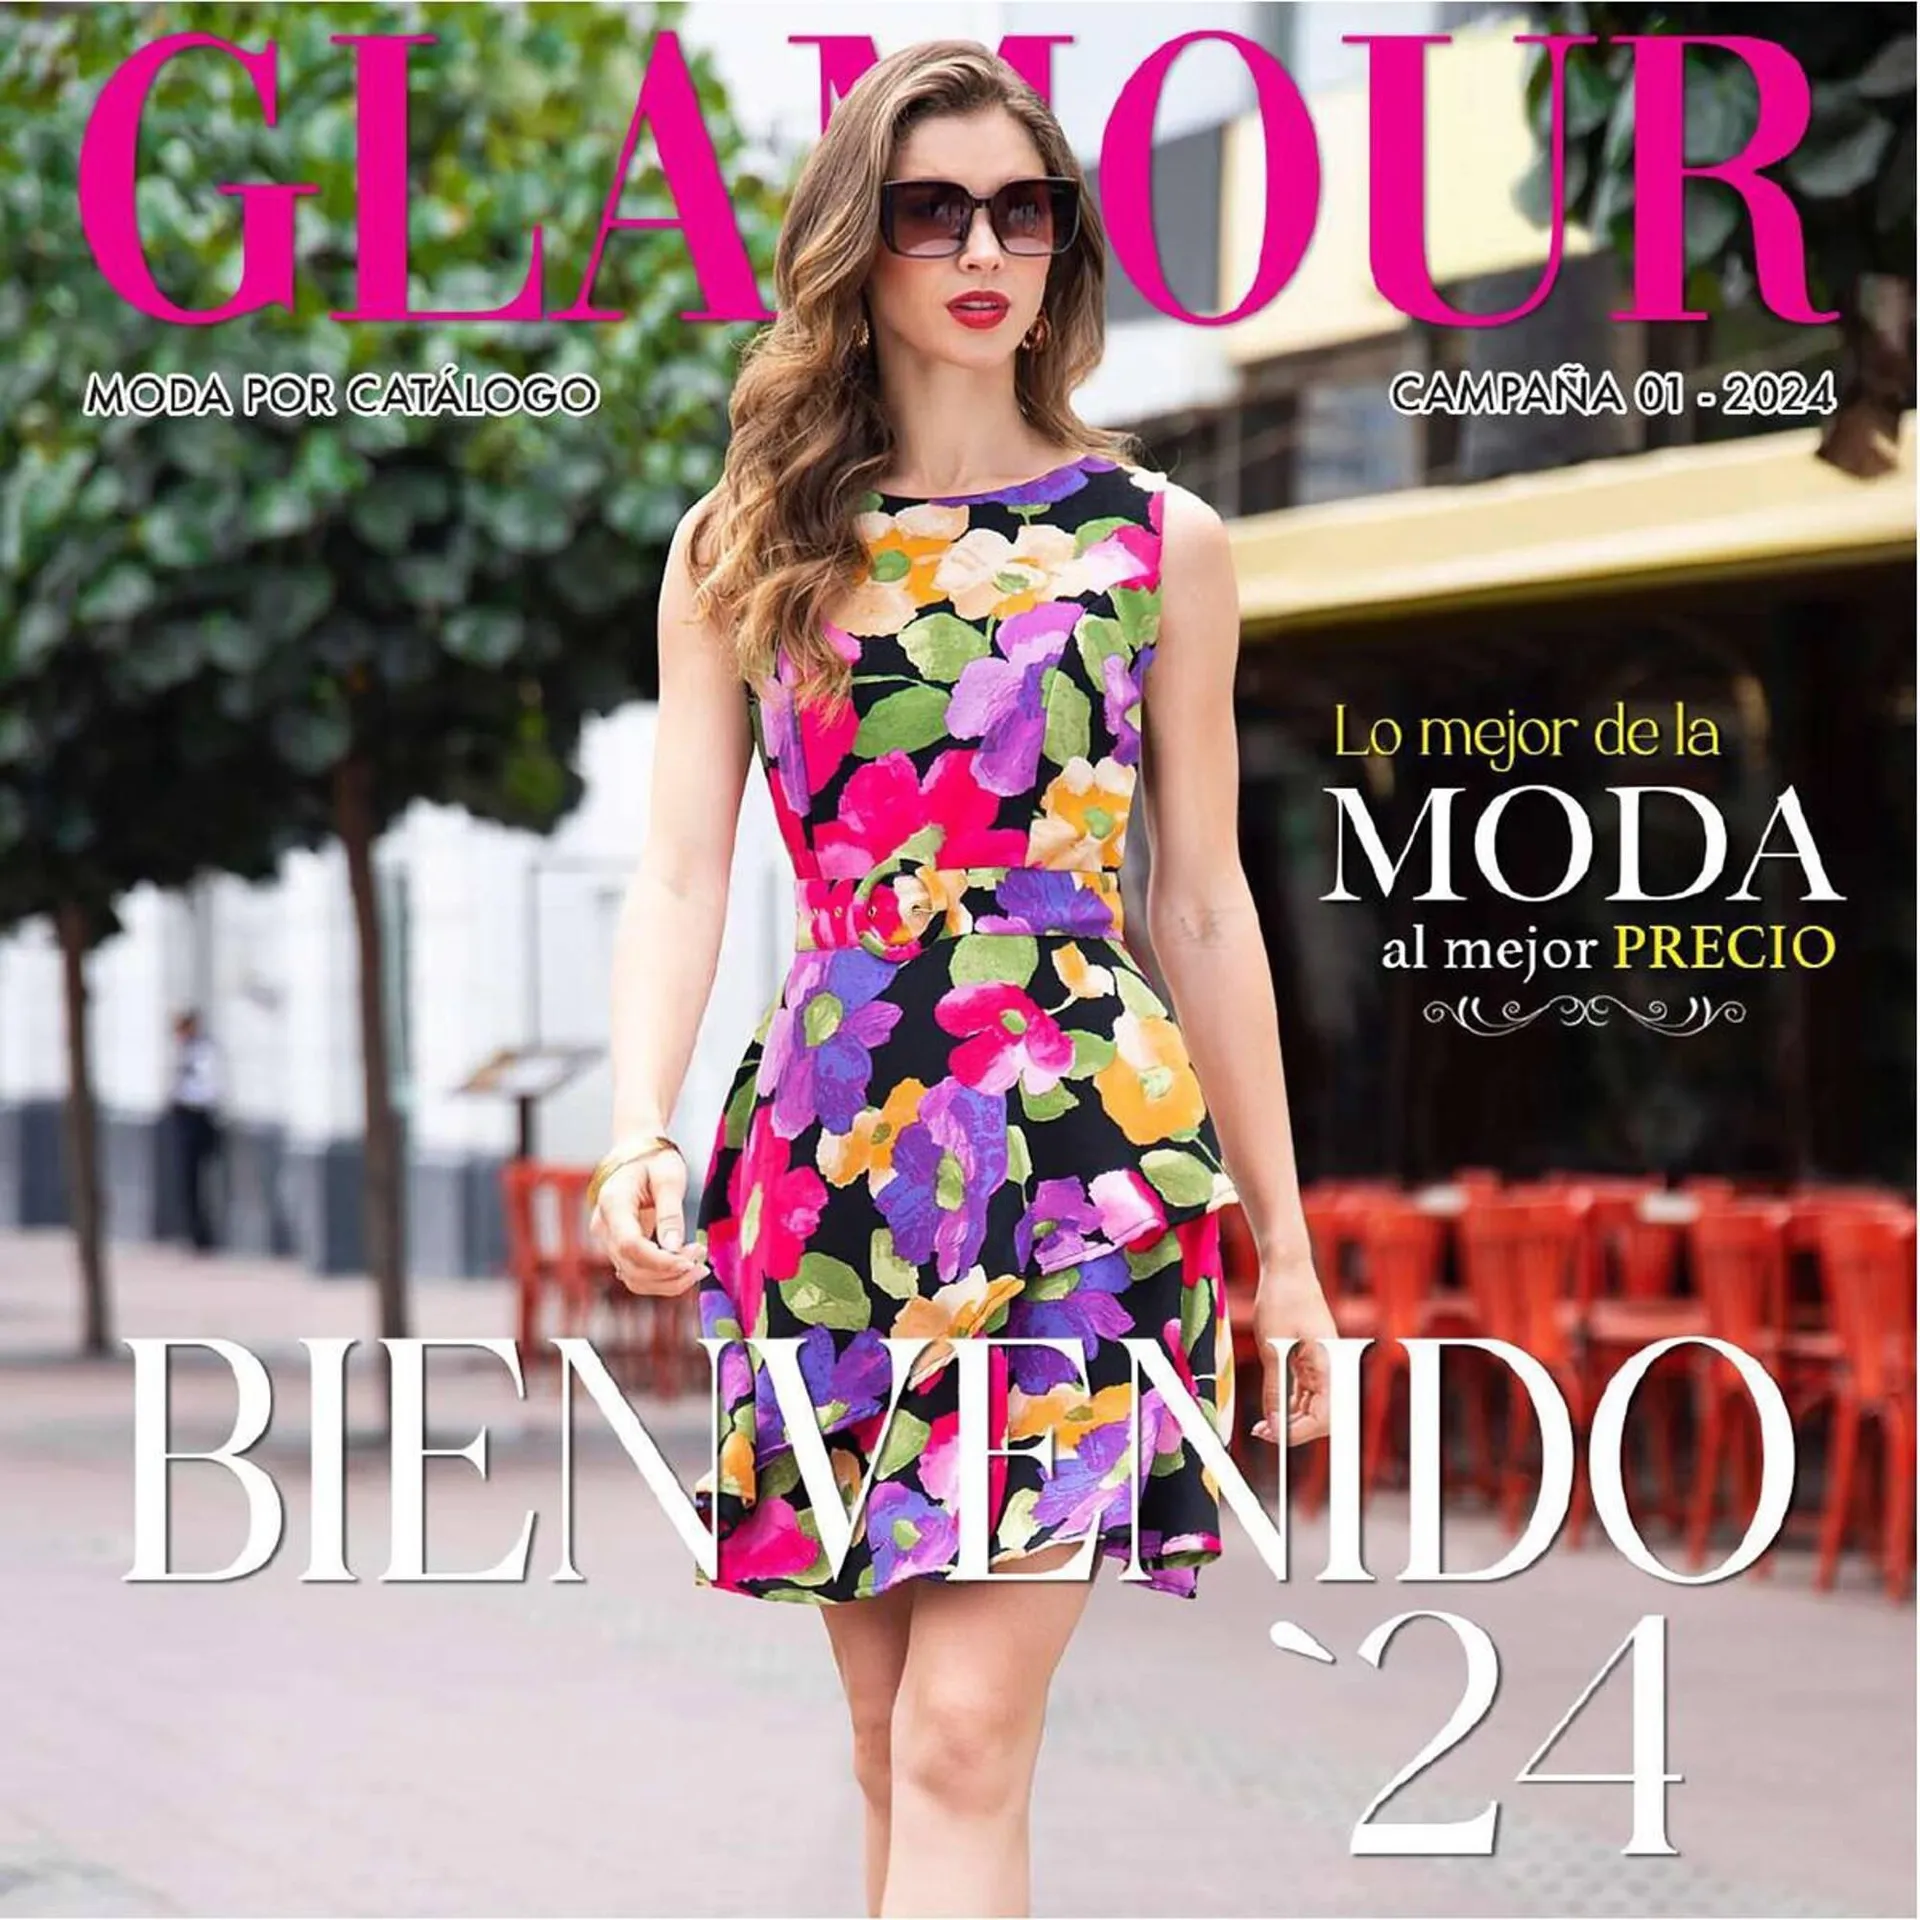 Catalogo de Catálogo Glamour 18 de enero al 31 de enero 2024 - Pag 1